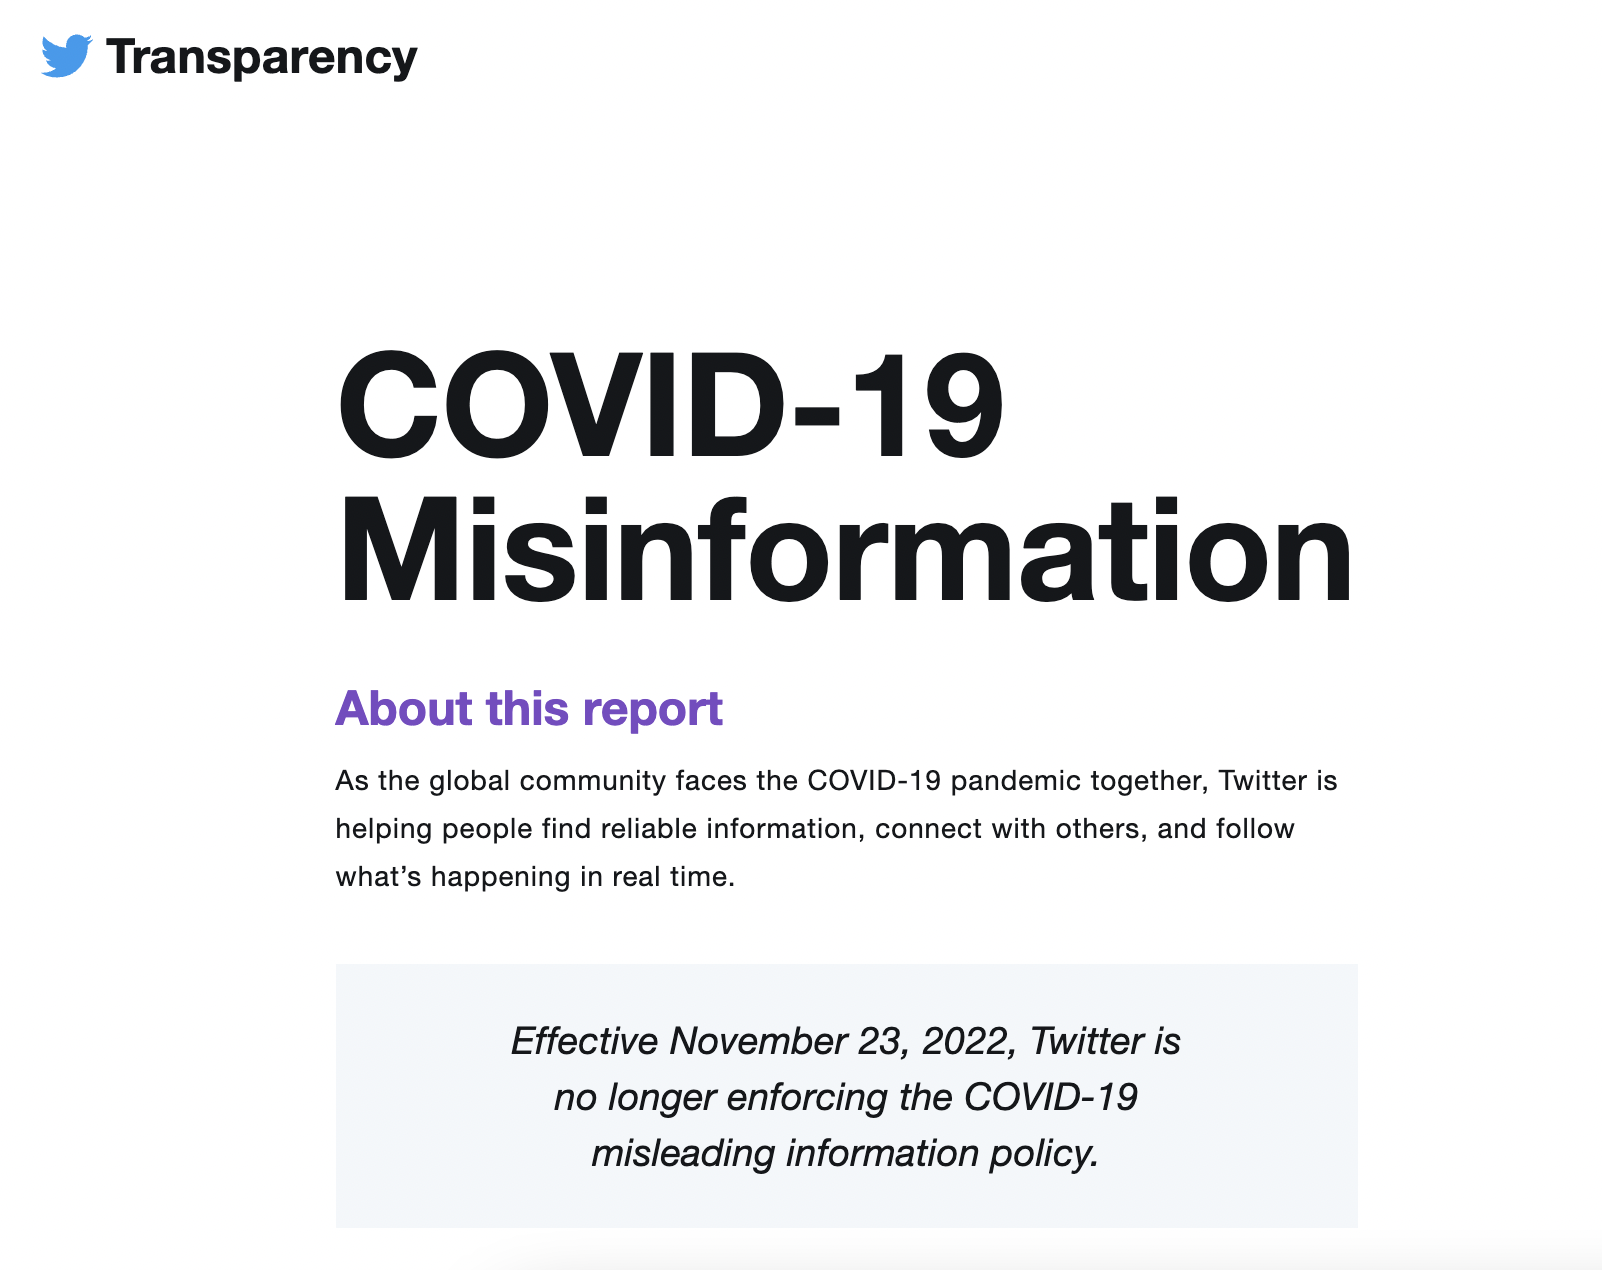 Qué sabemos de la decisión de Twitter de eliminar su política contra la desinformación sobre el COVID-19